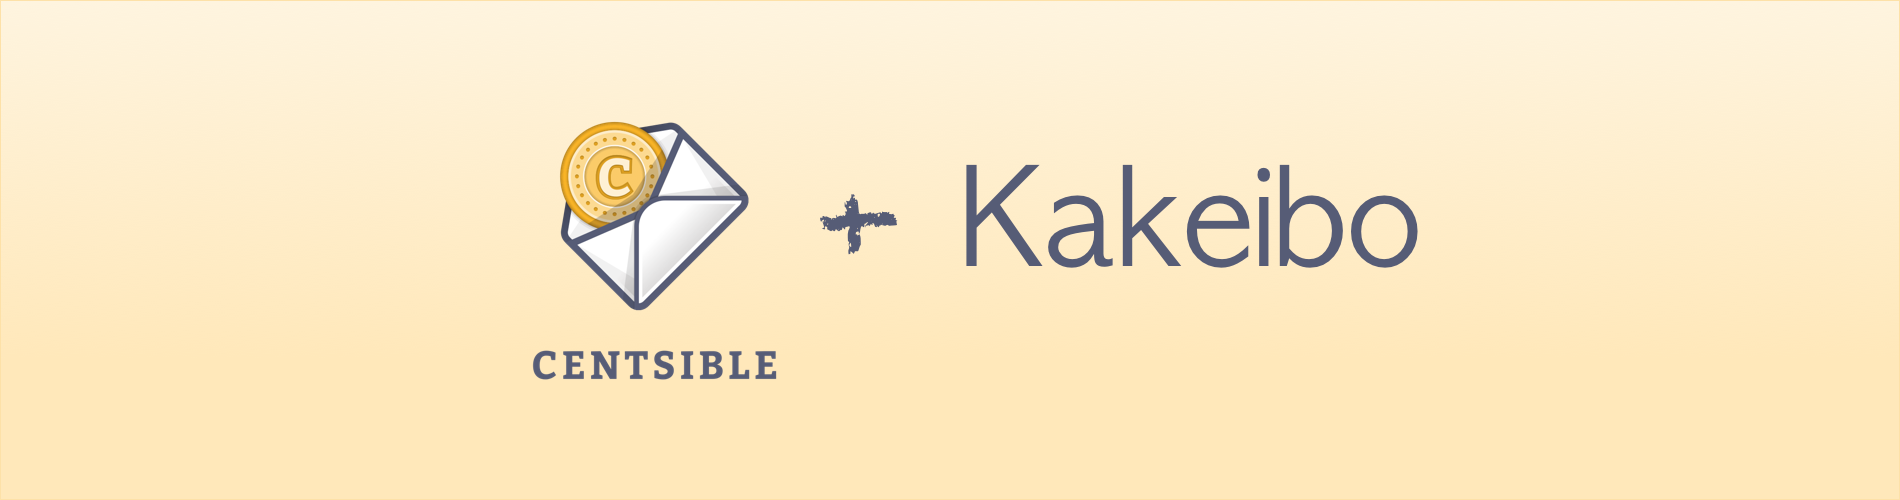 Kakeibo App